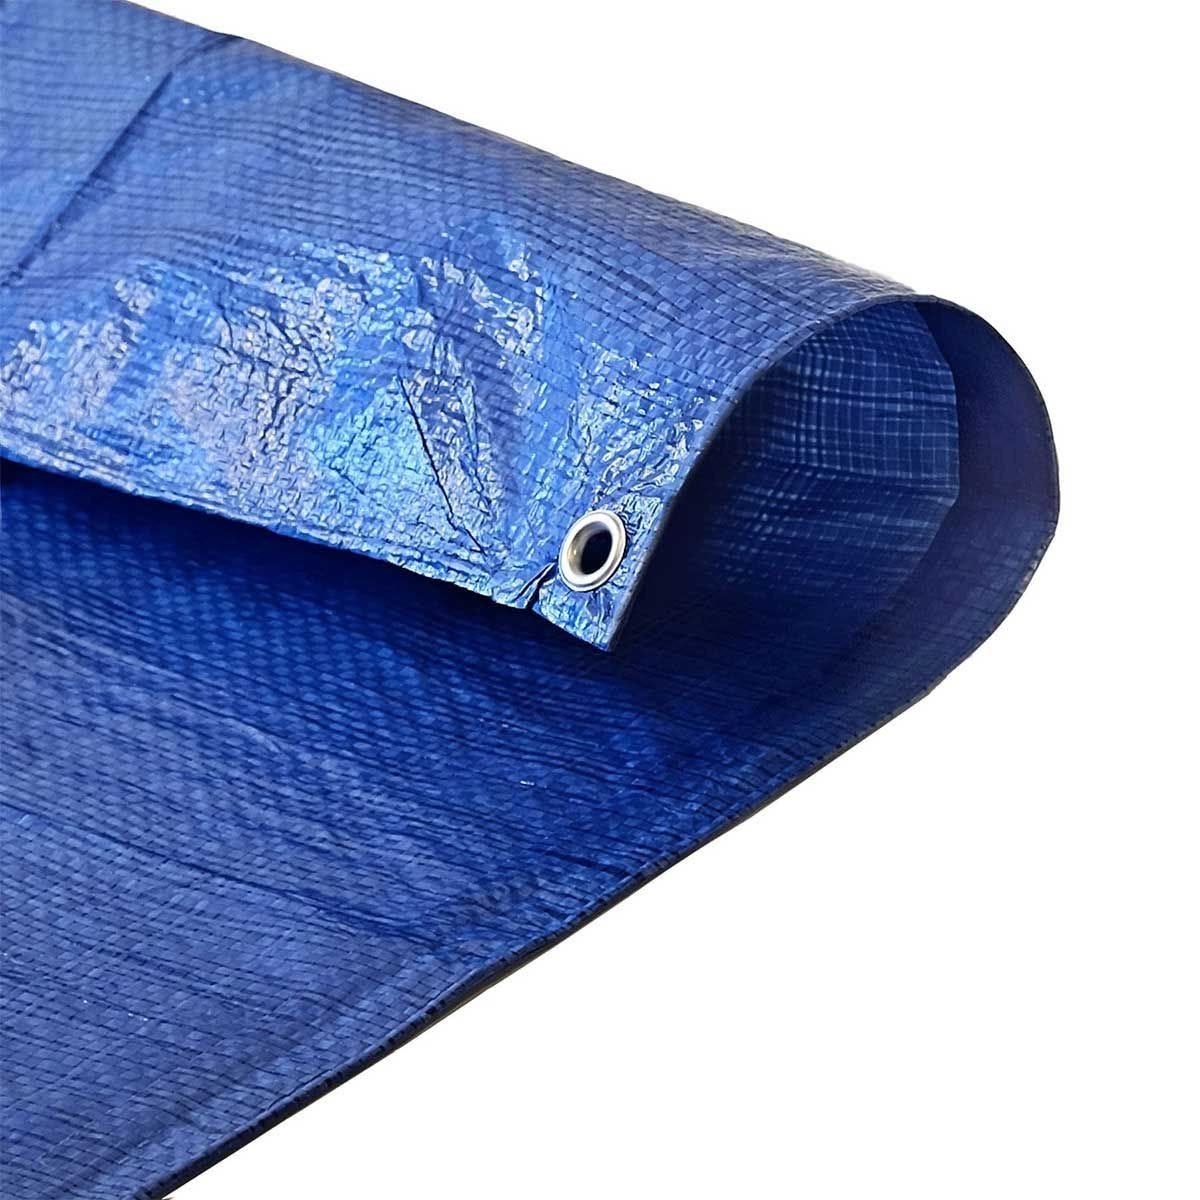 Bâche de Protection 2x3 m - TECPLAST 150MU - Bleue et Verte - Haute Qualité - Bâche d'extérieur imperméable avec oeillets 3